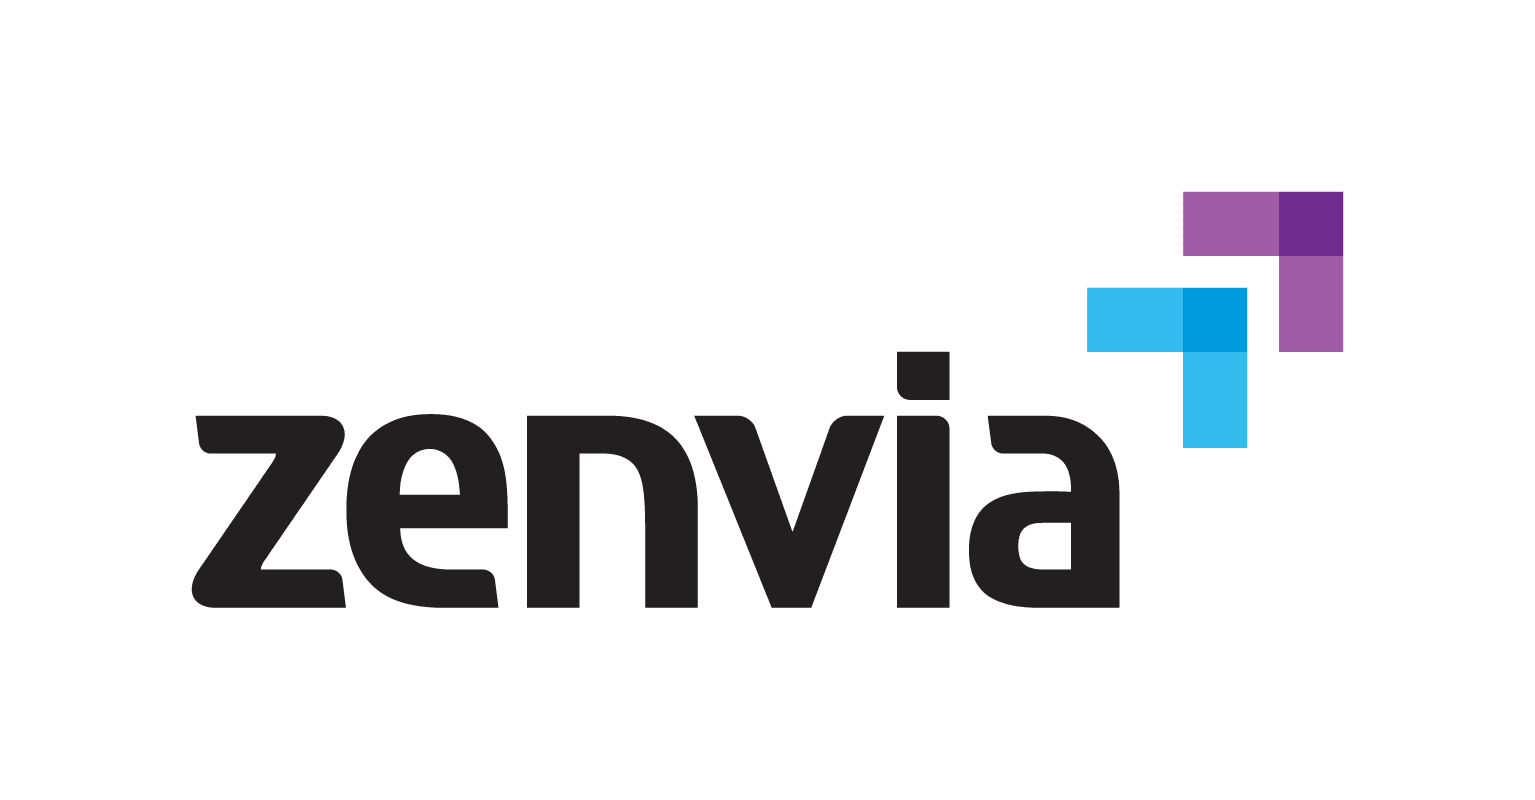 Zenvia corporate culture